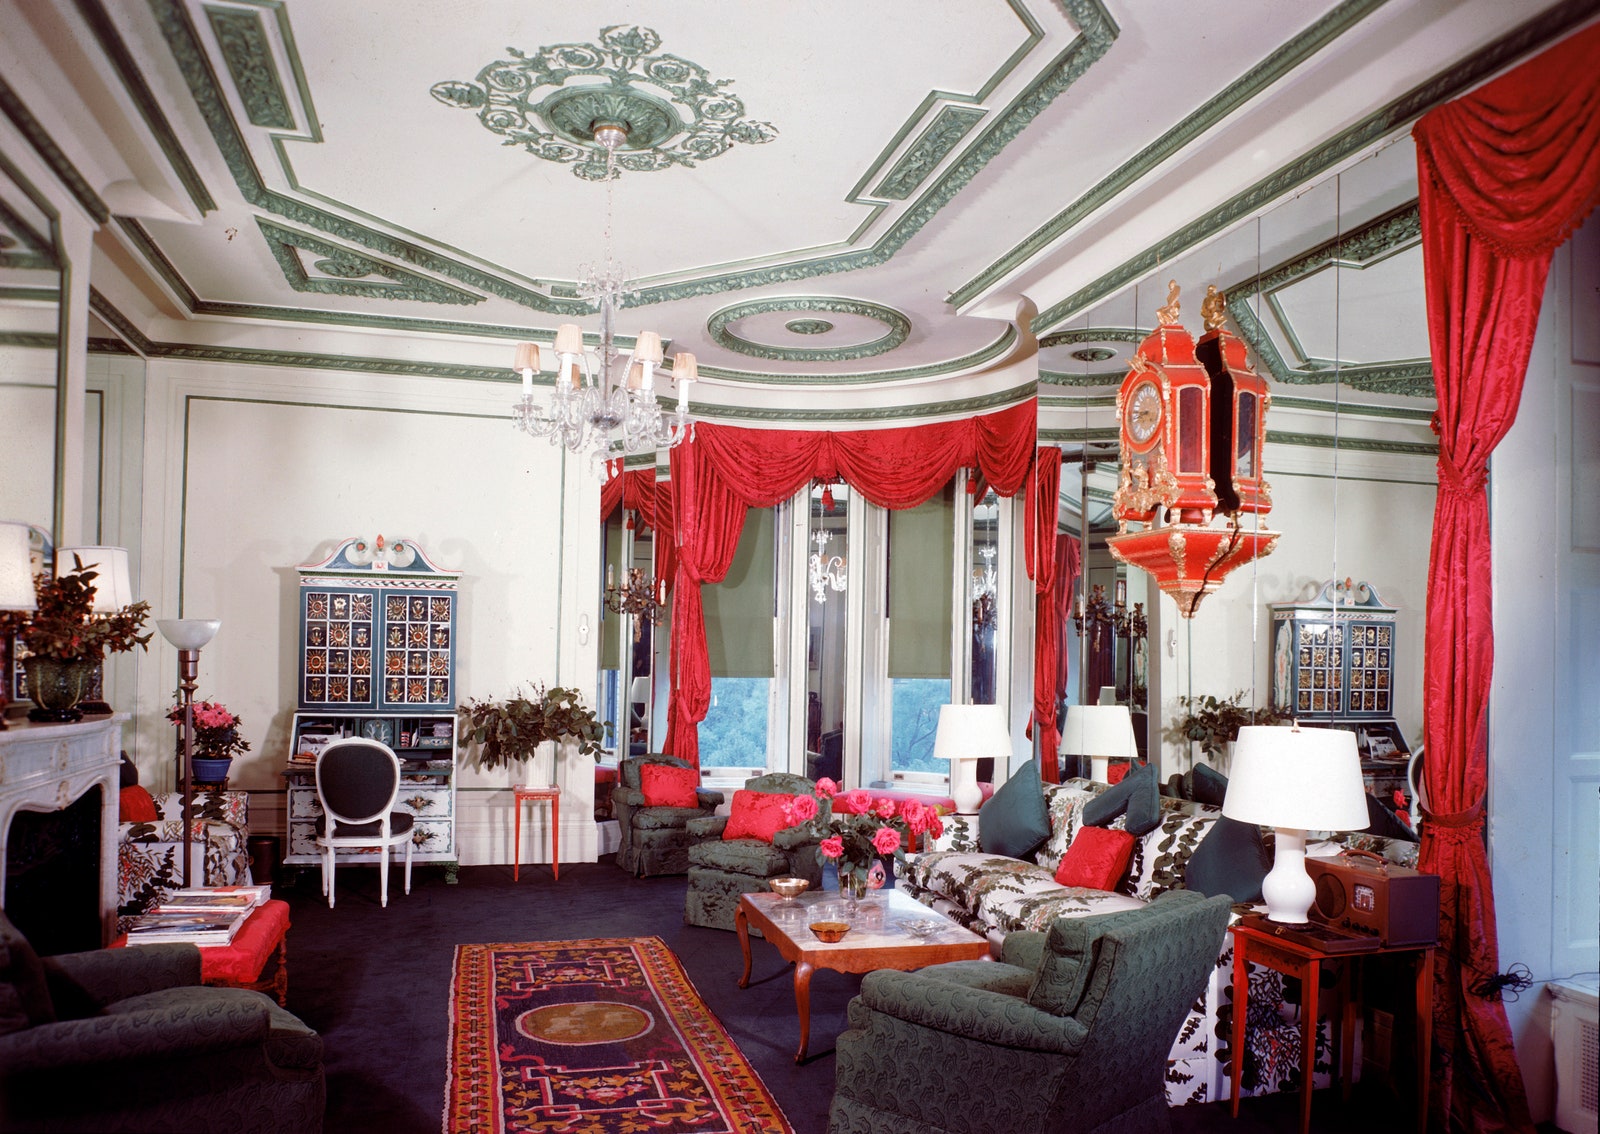 Интерьер Vertes Suite в ньюйоркском отеле The Plaza по проекту Элси де Вольф 1946. На проект сюита было потрачено 18 000...